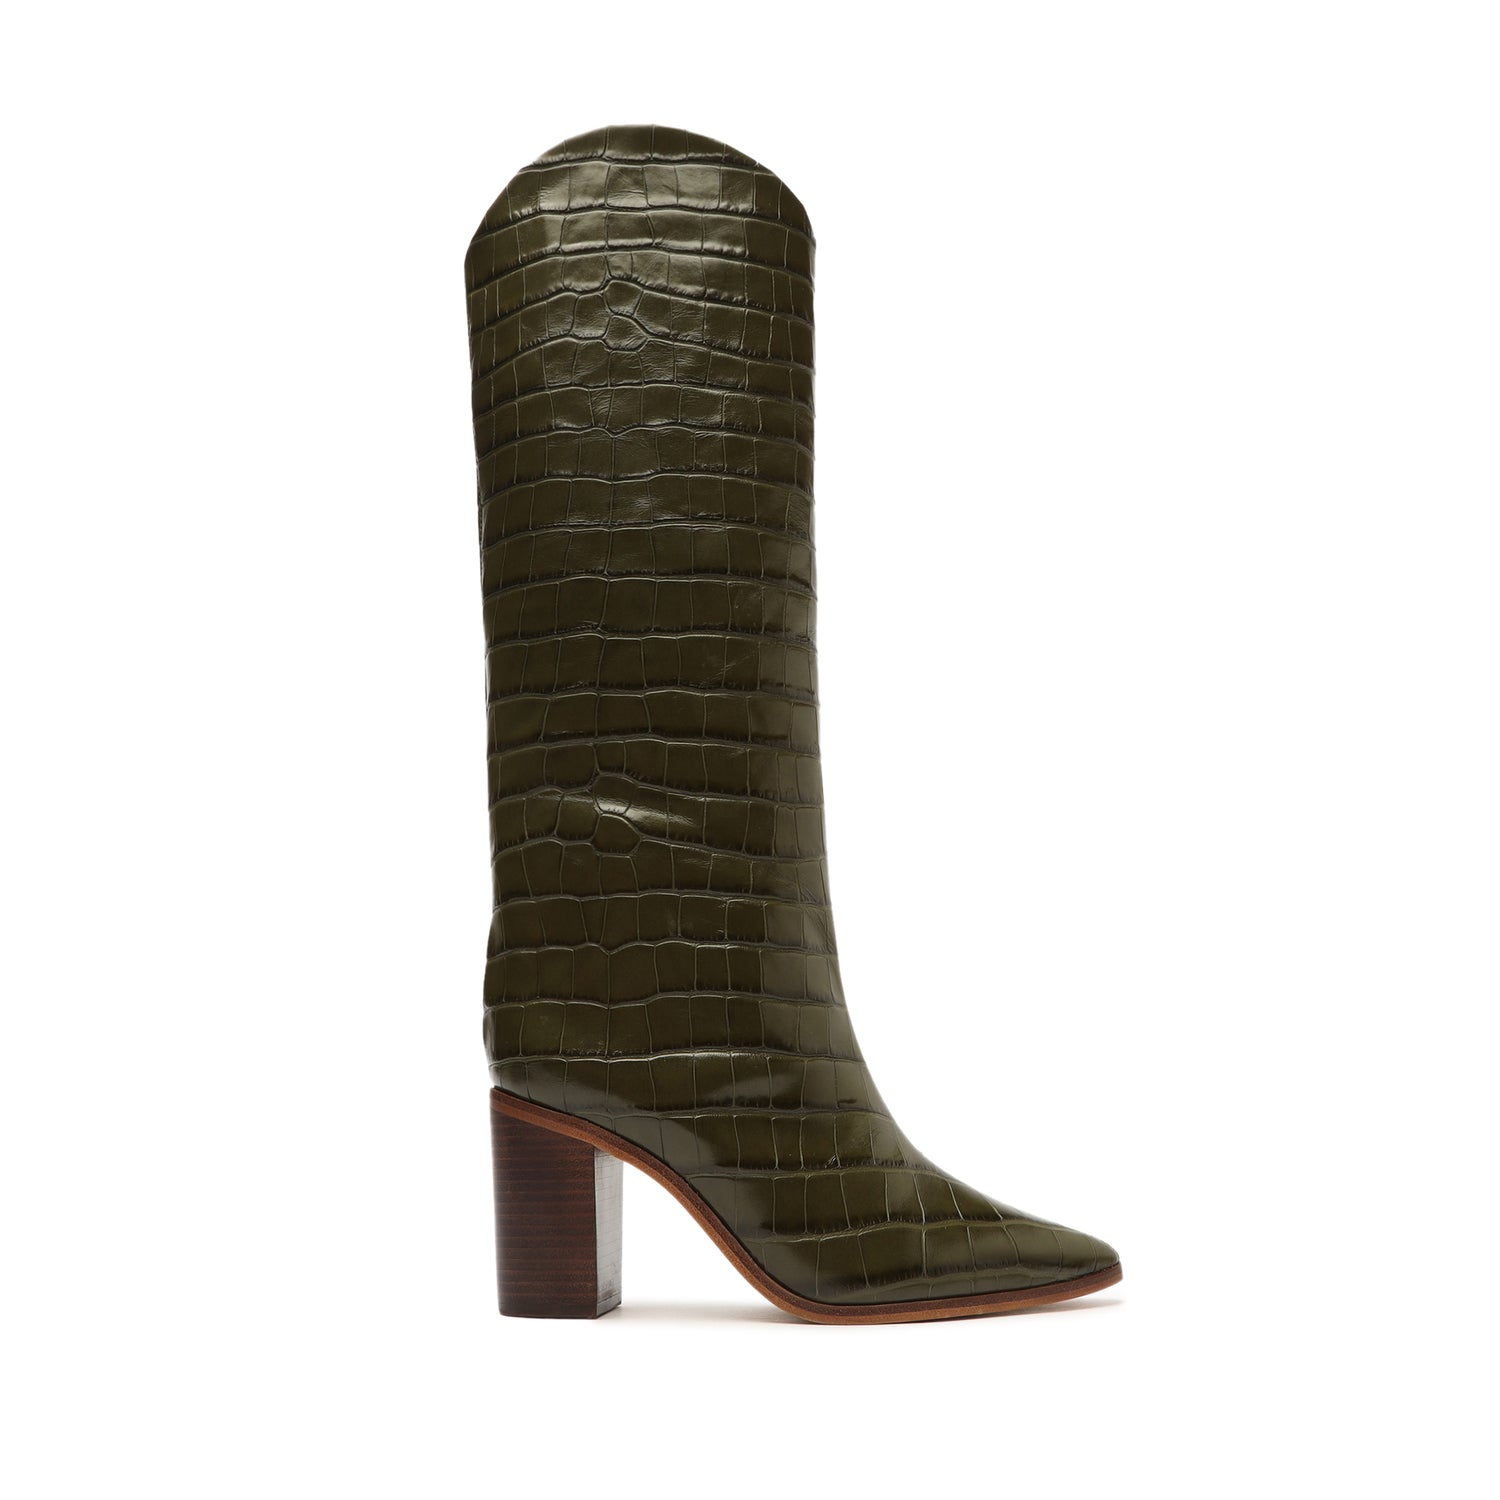 Maryana Block Crocodile-Embossed Leather Boot Boots OLD 5 Military Green Crocodile-Embossed Leather - Schutz Shoes